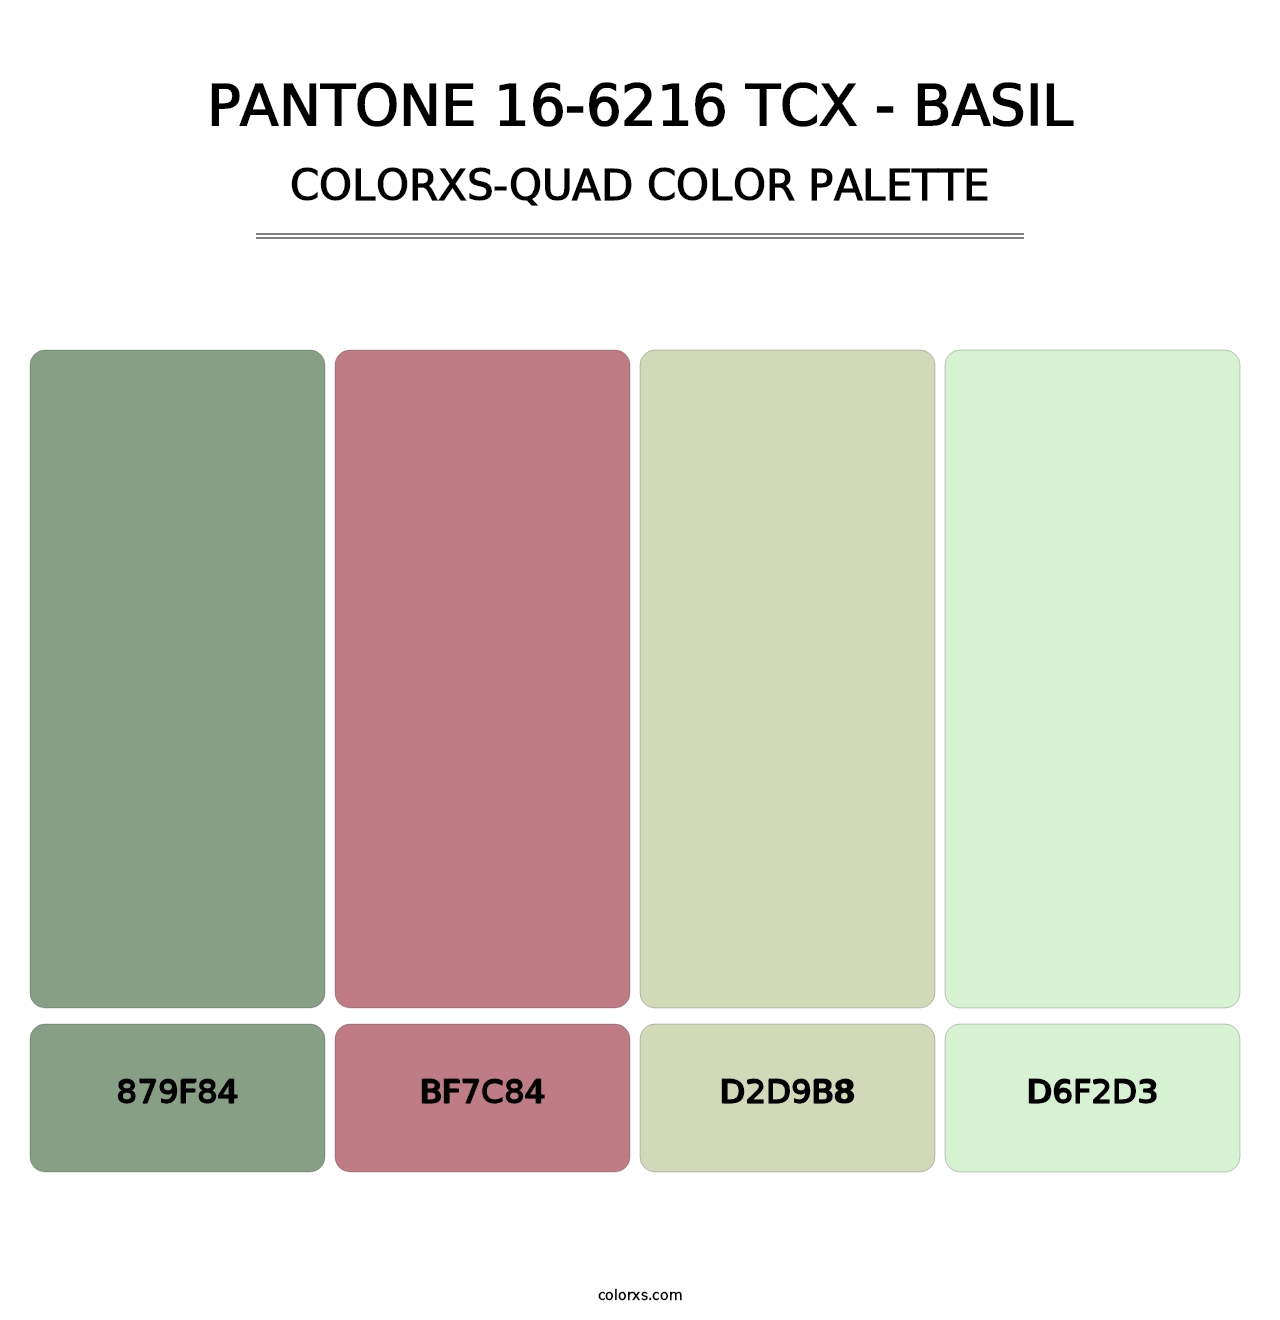 PANTONE 16-6216 TCX - Basil - Colorxs Quad Palette